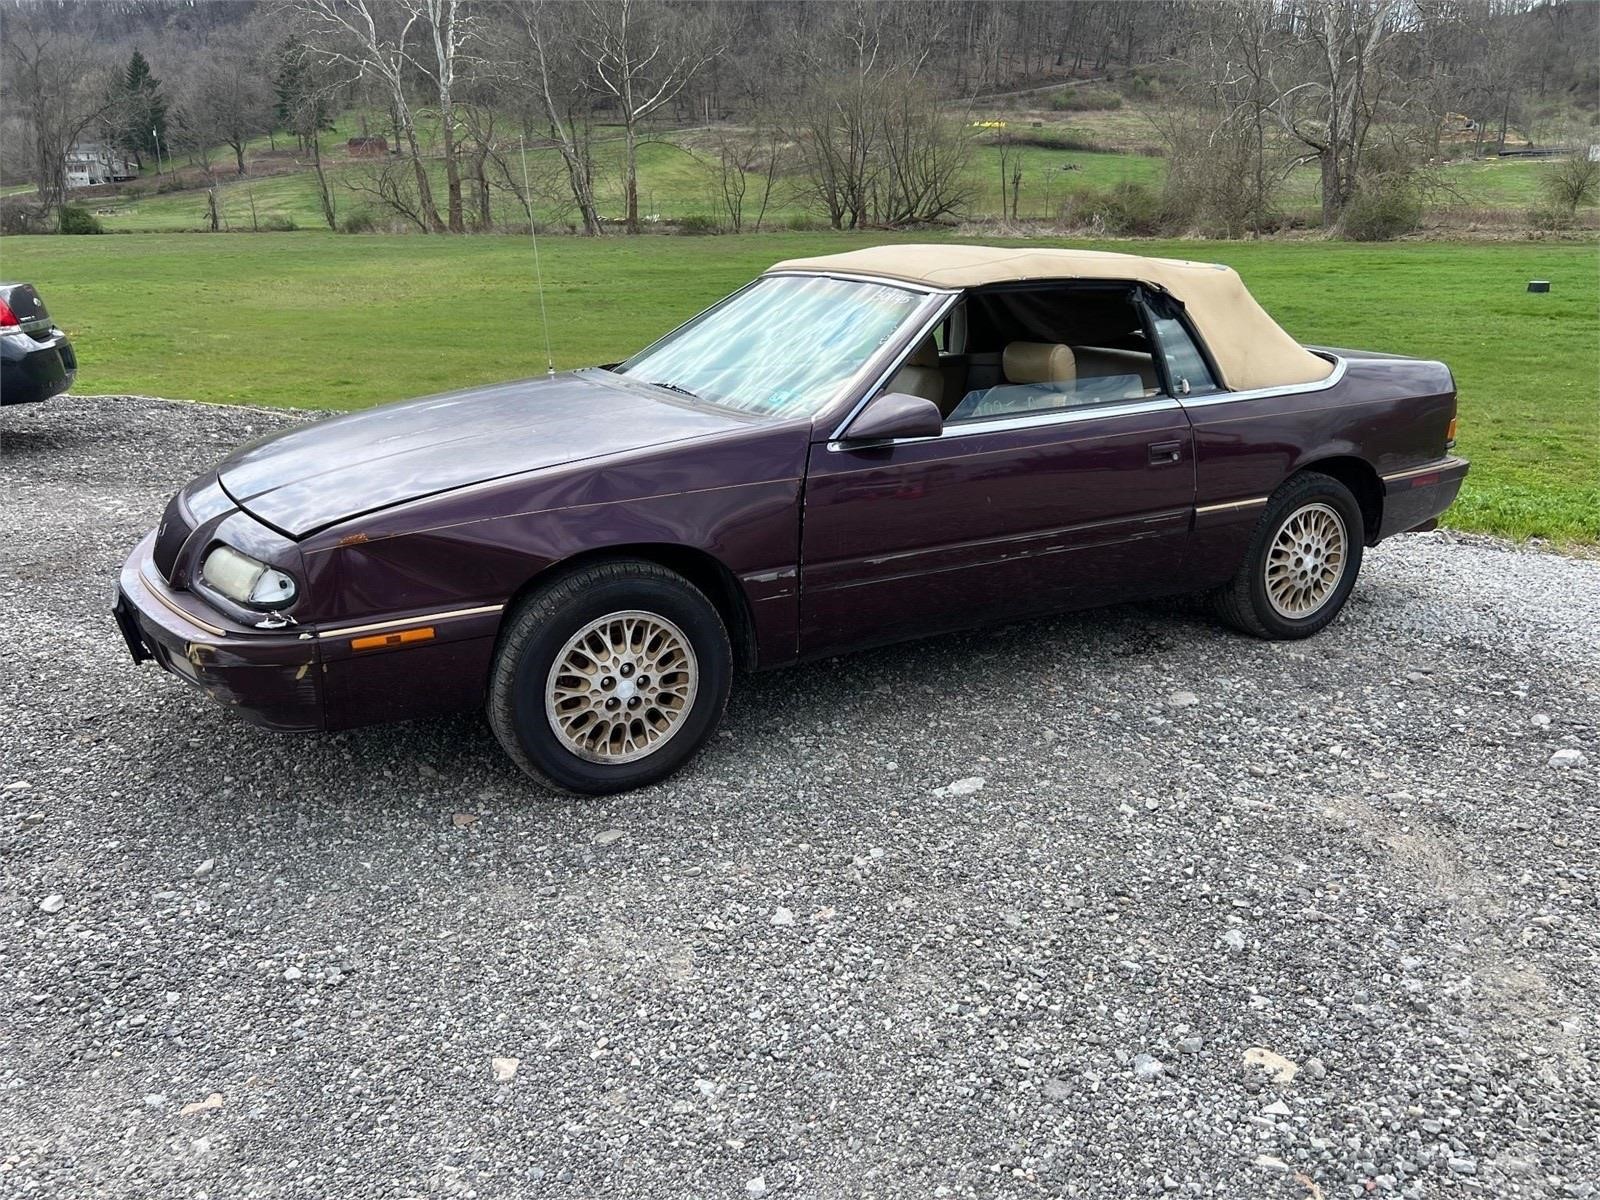 1995 Chrysler Lebaron - Titled